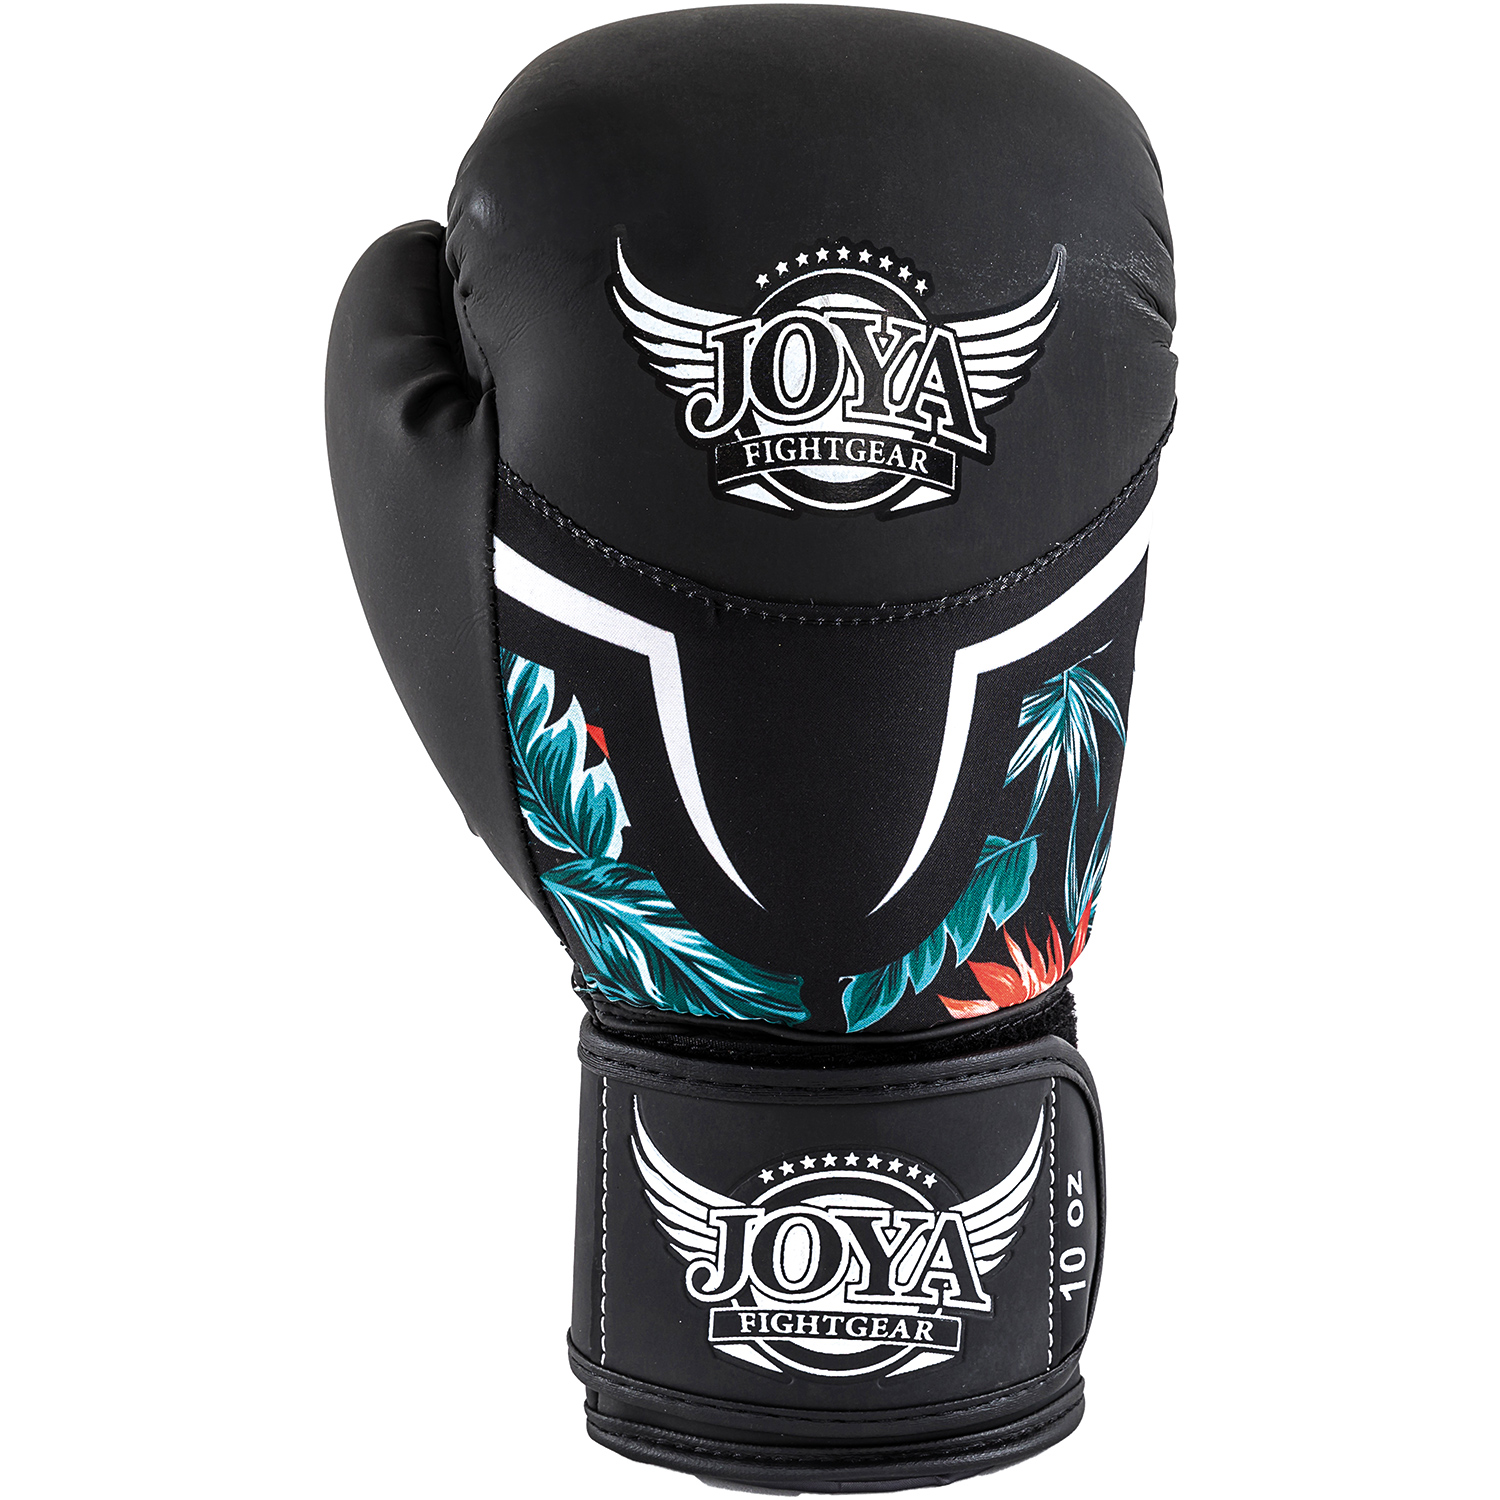 Joya Tropical boxing glove 14 oz